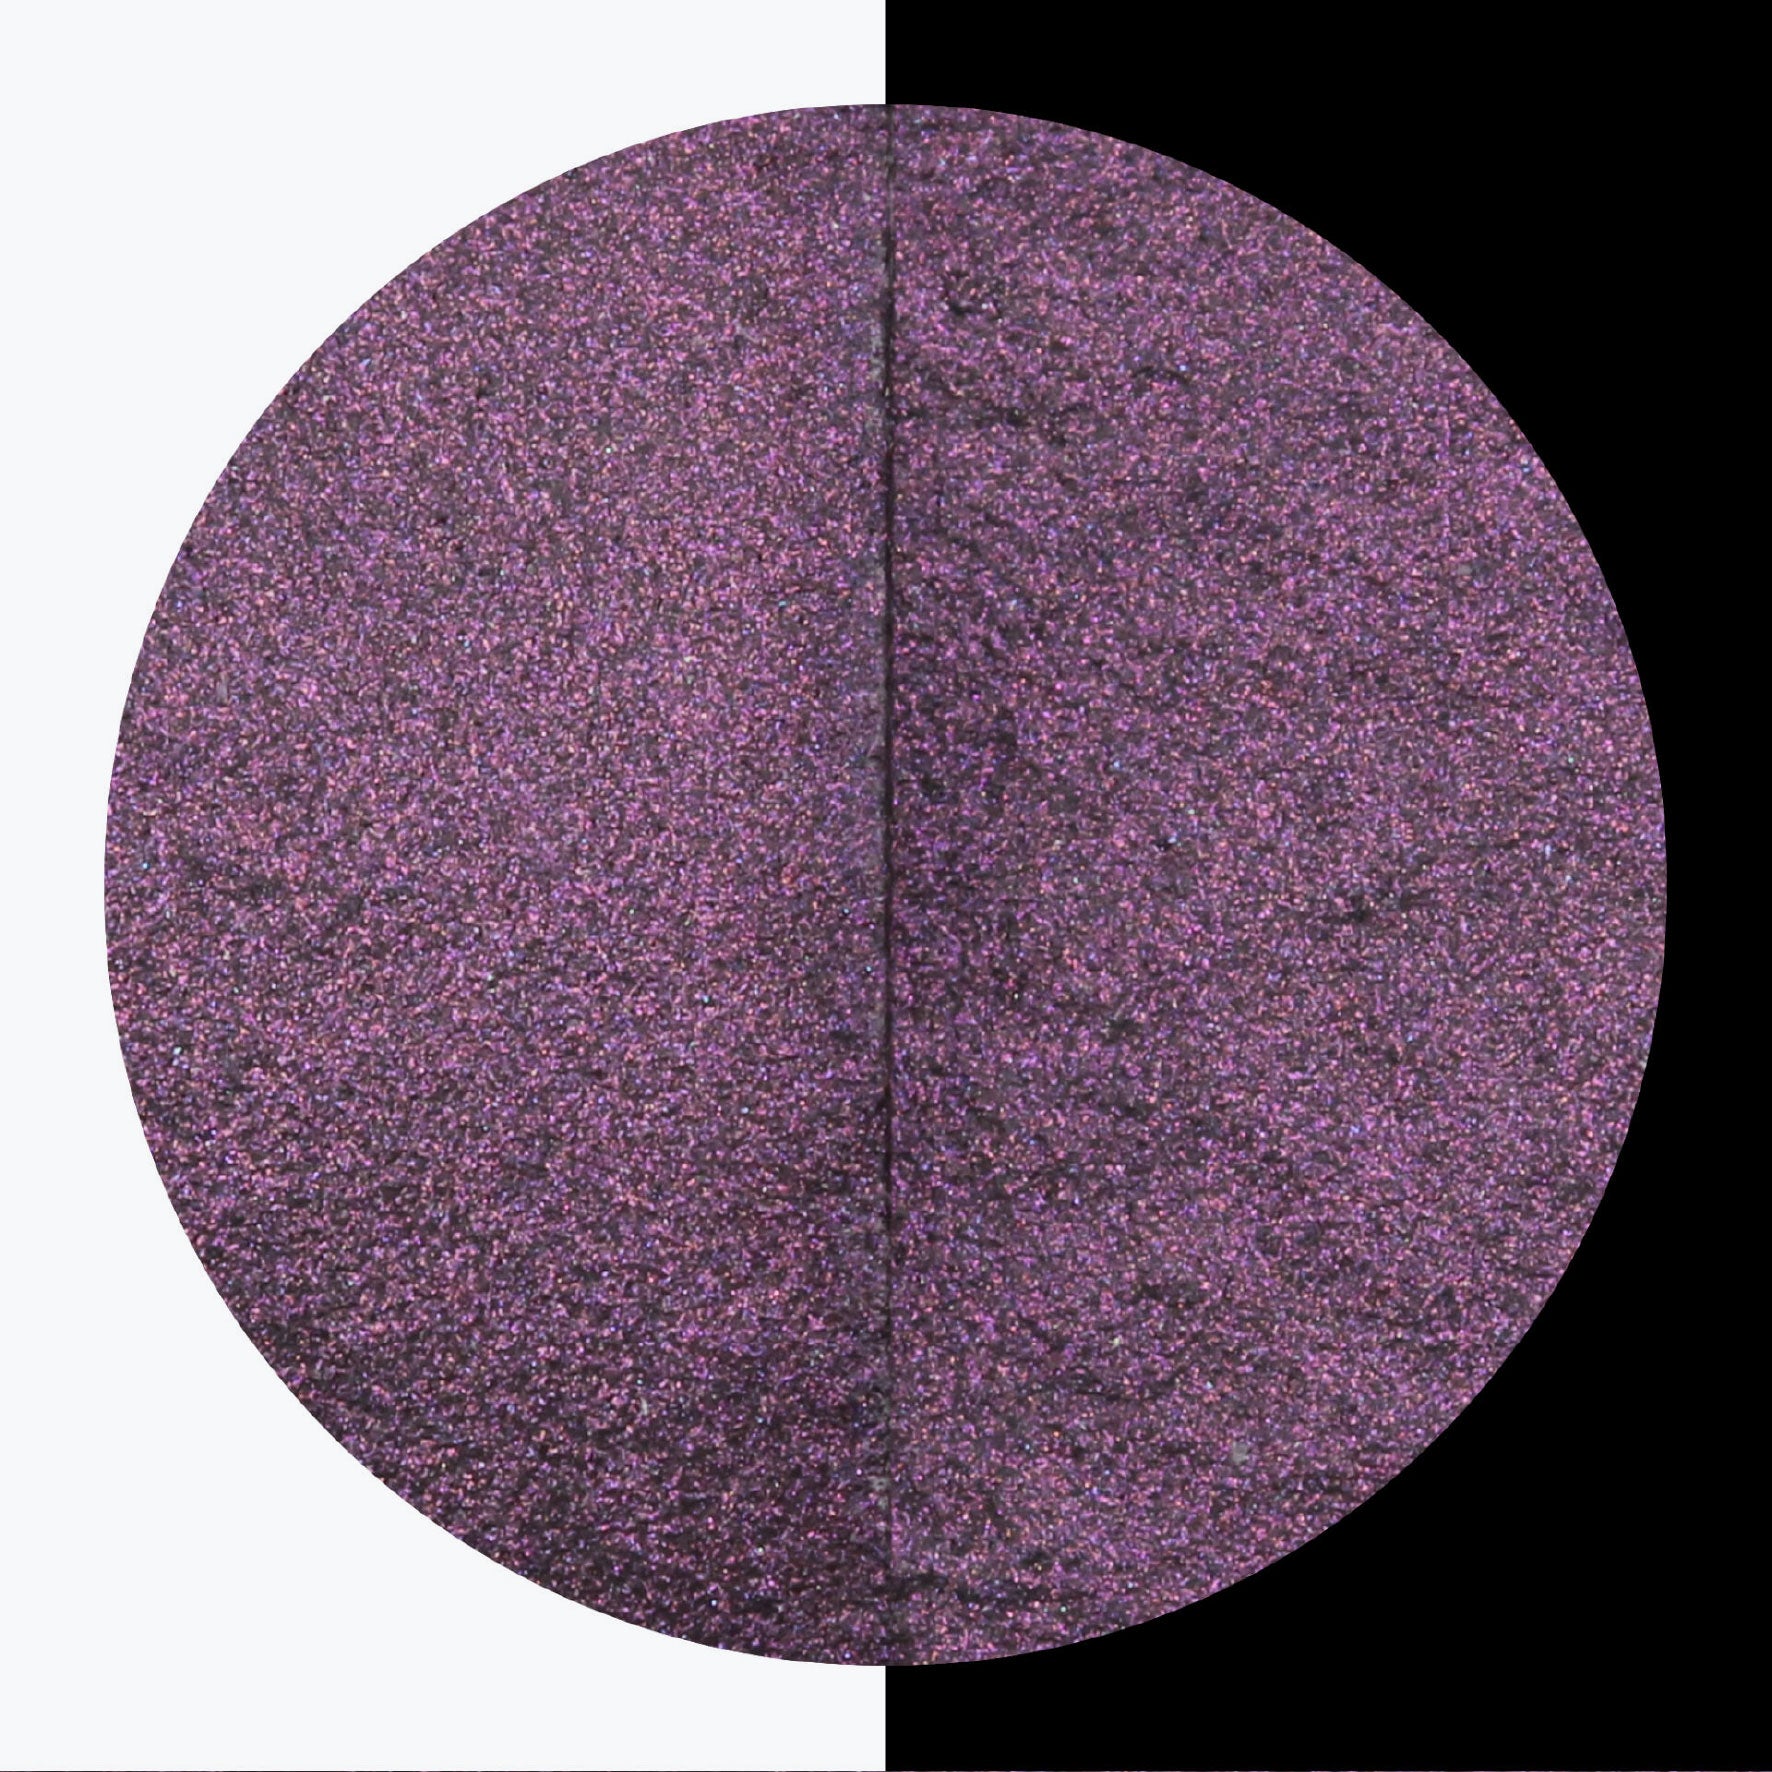 Finetec - Pearlcolor Mix - Black Currant